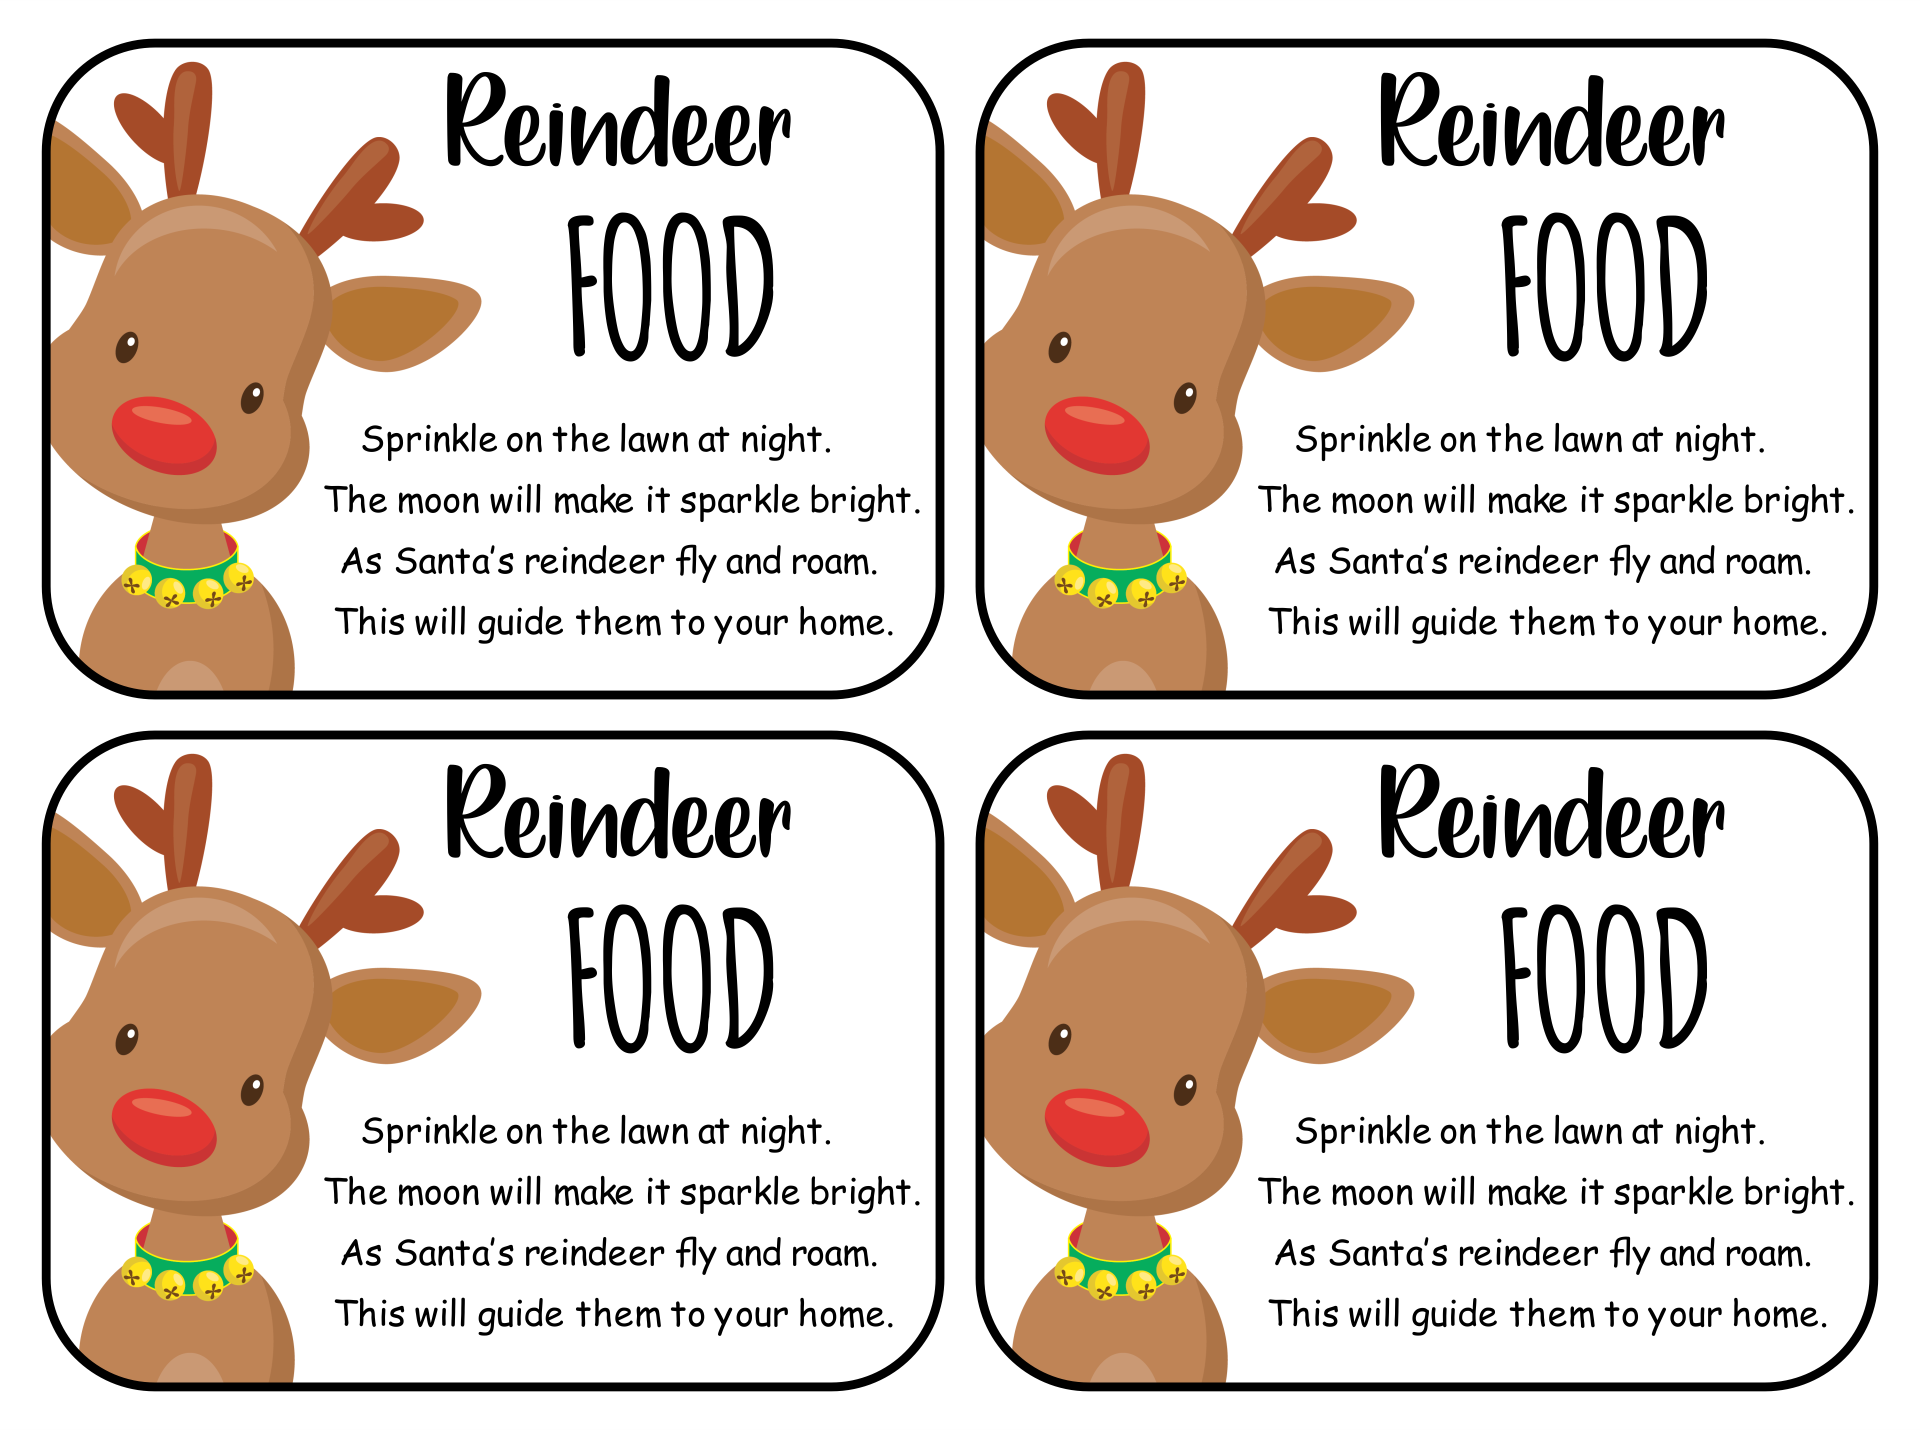 5-best-images-of-reindeer-food-poem-printable-labels-reindeer-food-poem-printable-reindeer